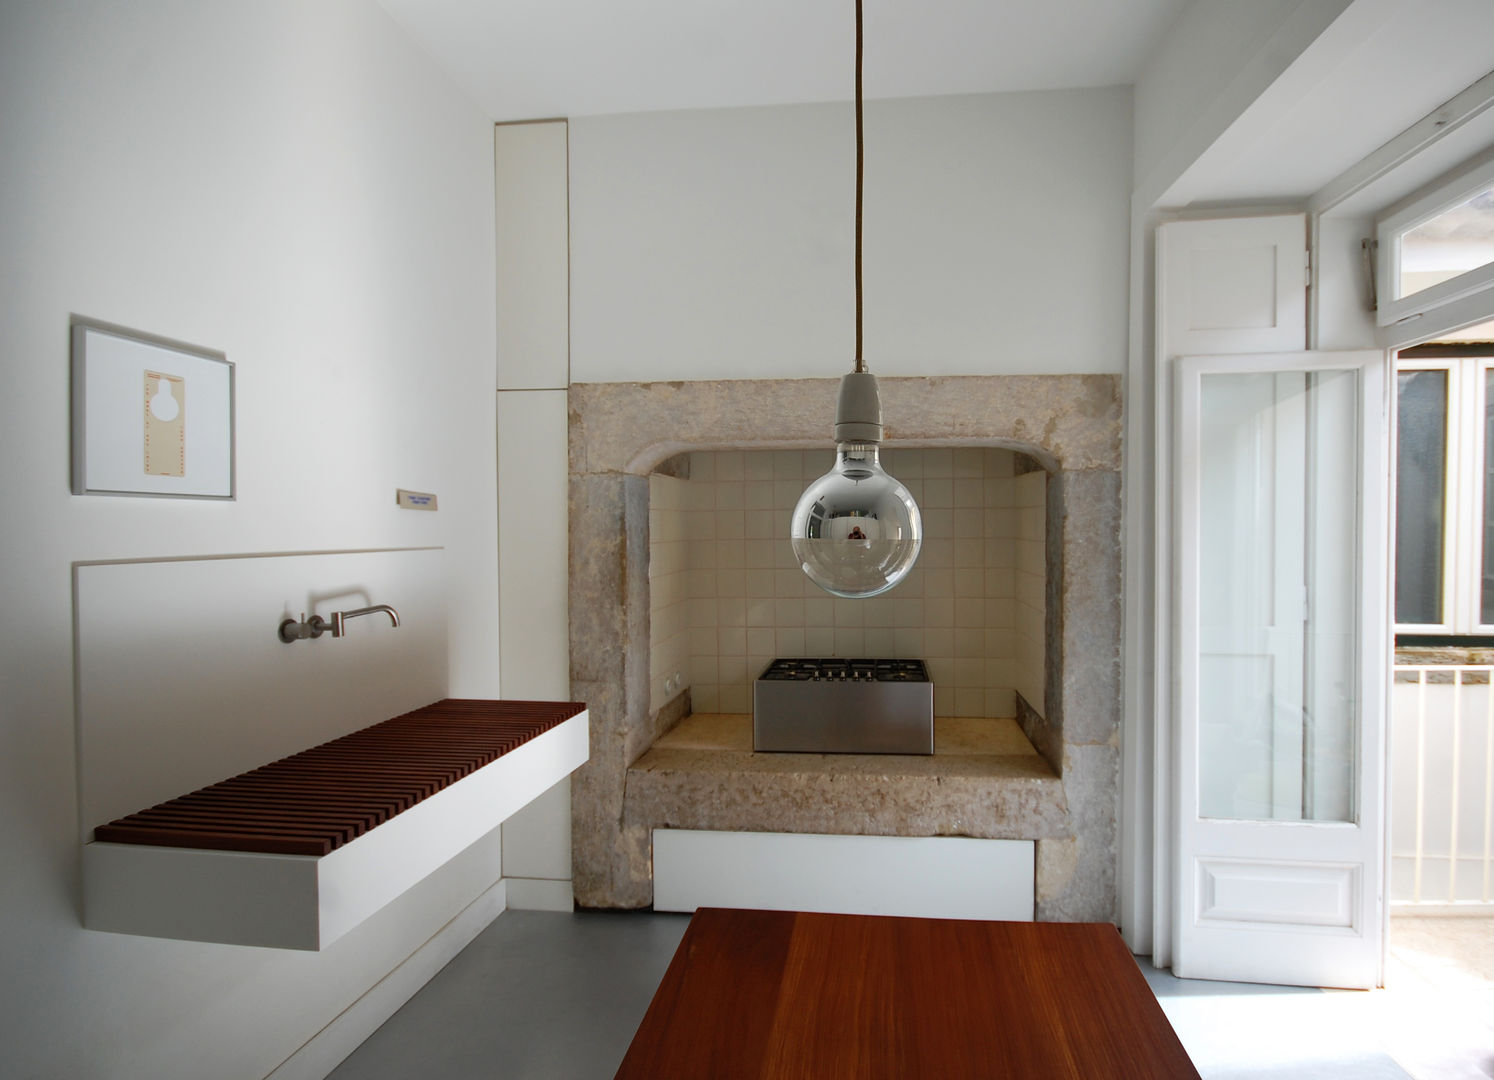 Apartamento Pedras Negras (2012), pedro pacheco arquitectos pedro pacheco arquitectos Cuisine minimaliste